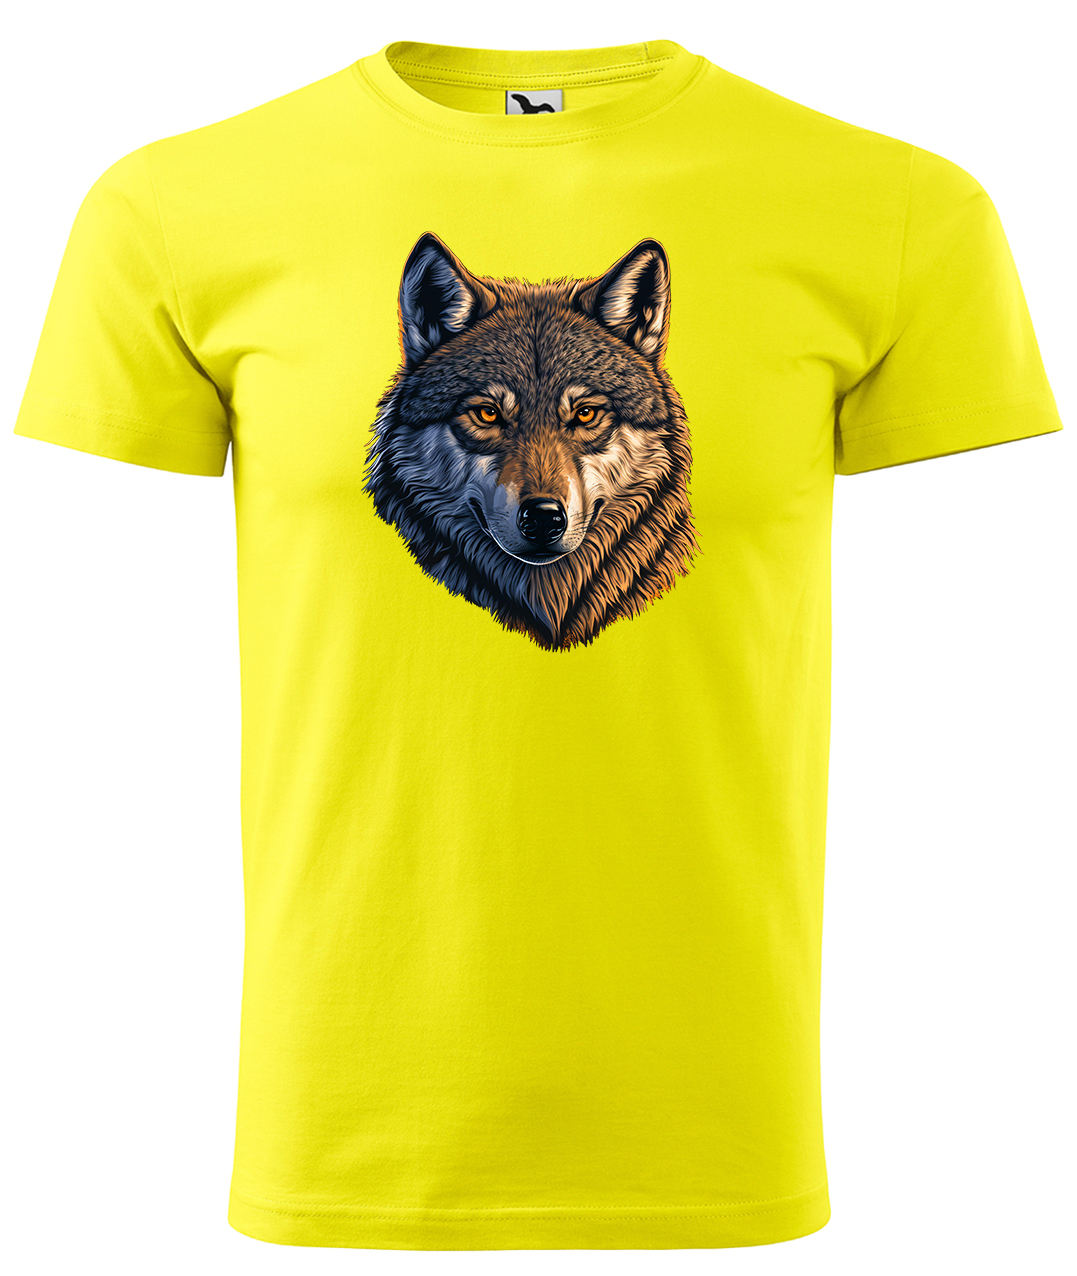 Dětské tričko s vlkem - Hlava vlka Velikost: 4 roky / 110 cm, Barva: Žlutá (04), Délka rukávu: Krátký rukáv